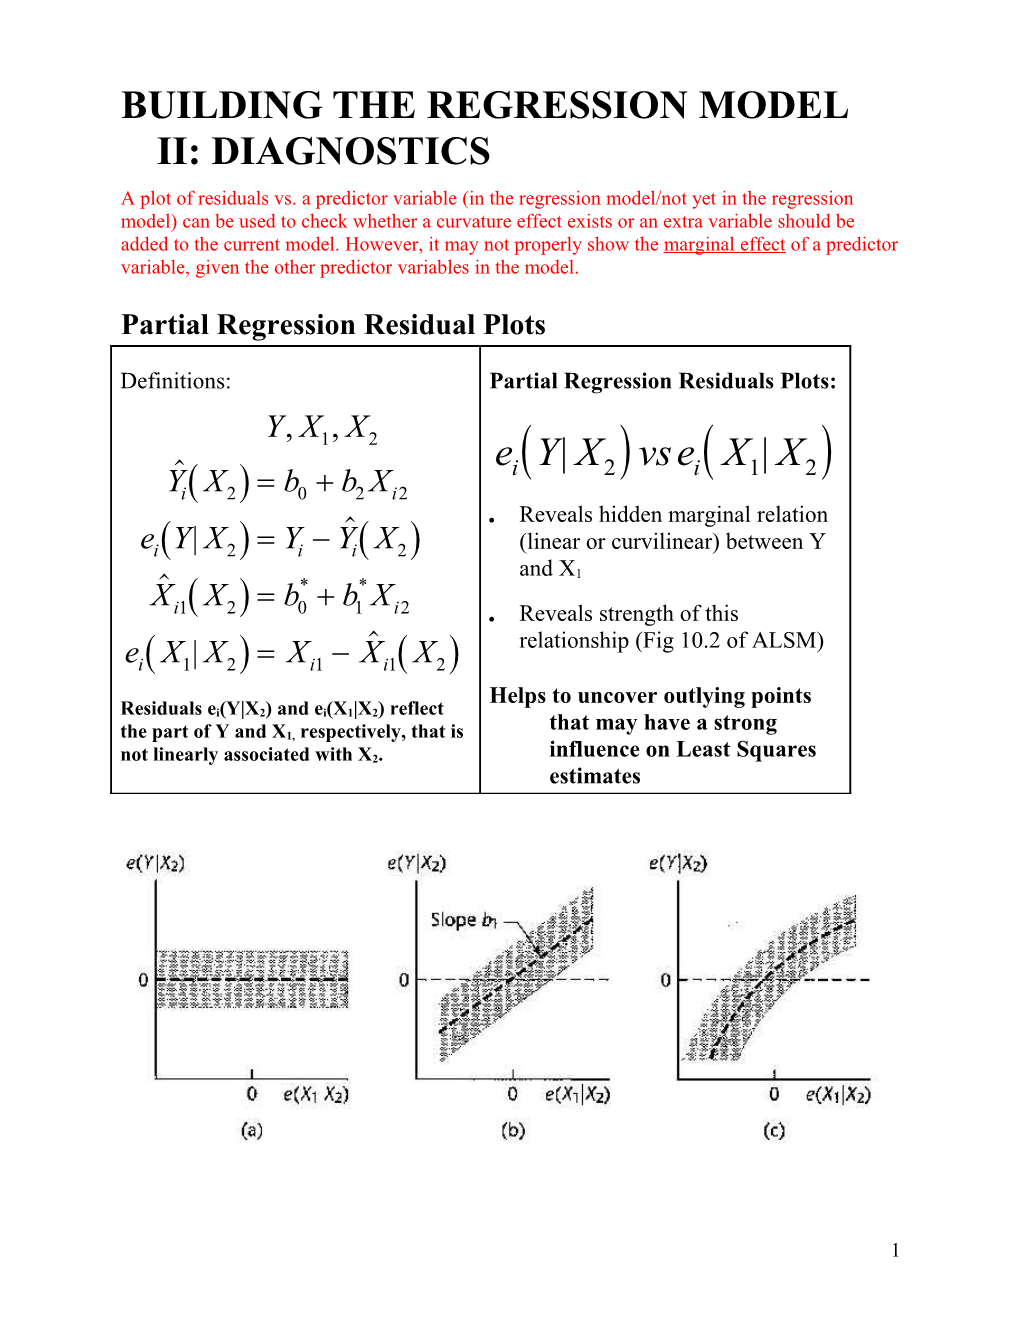 Building the Regression Model Ii: Diagnostics